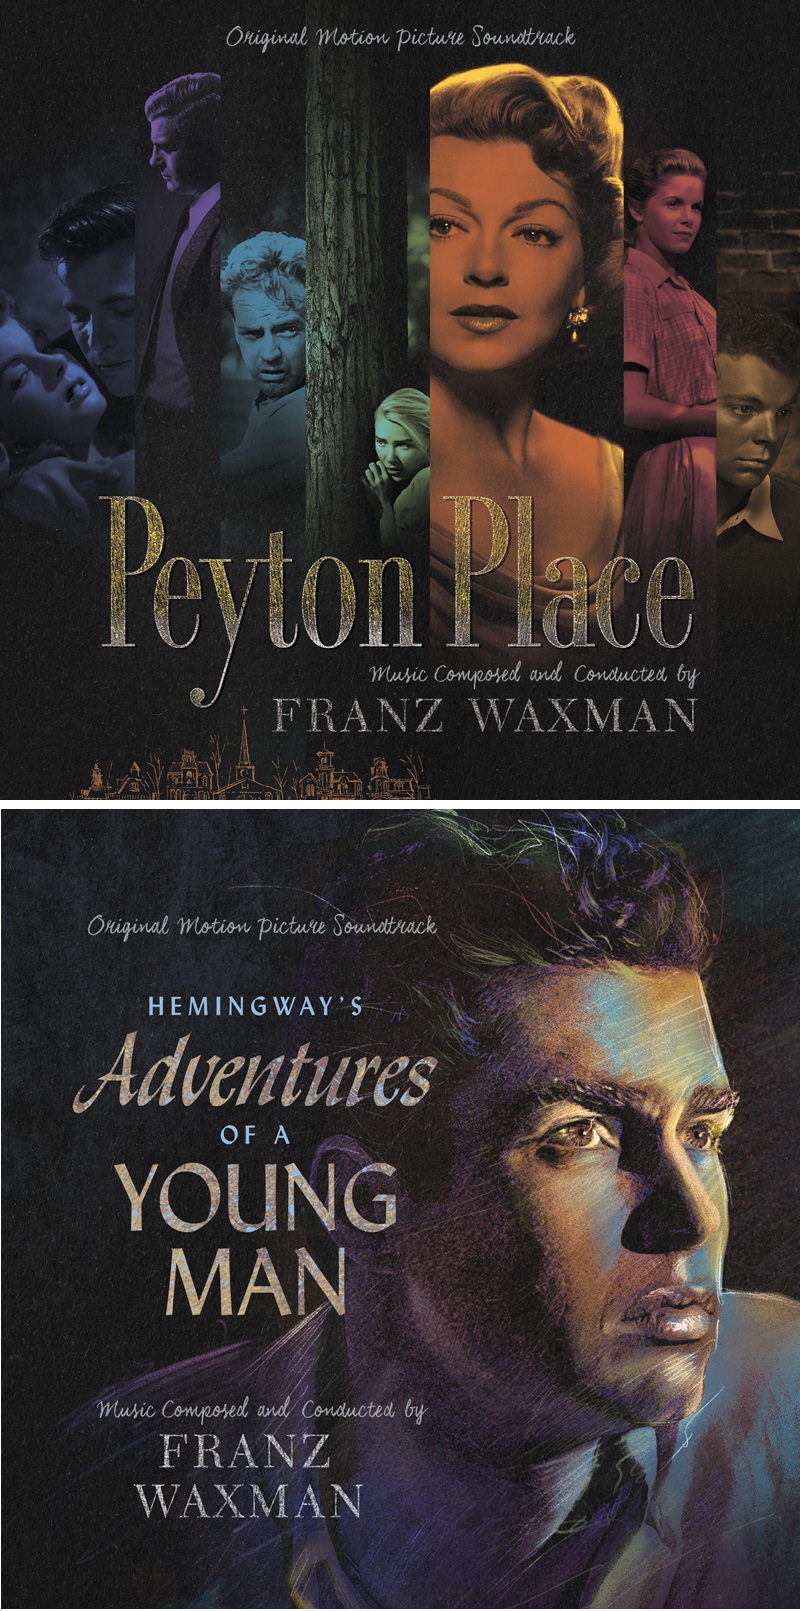 Les Plaisirs de l'enfer (Peyton Place) (1957) et les Aventures de jeunesse (Hemingway's Adventures o